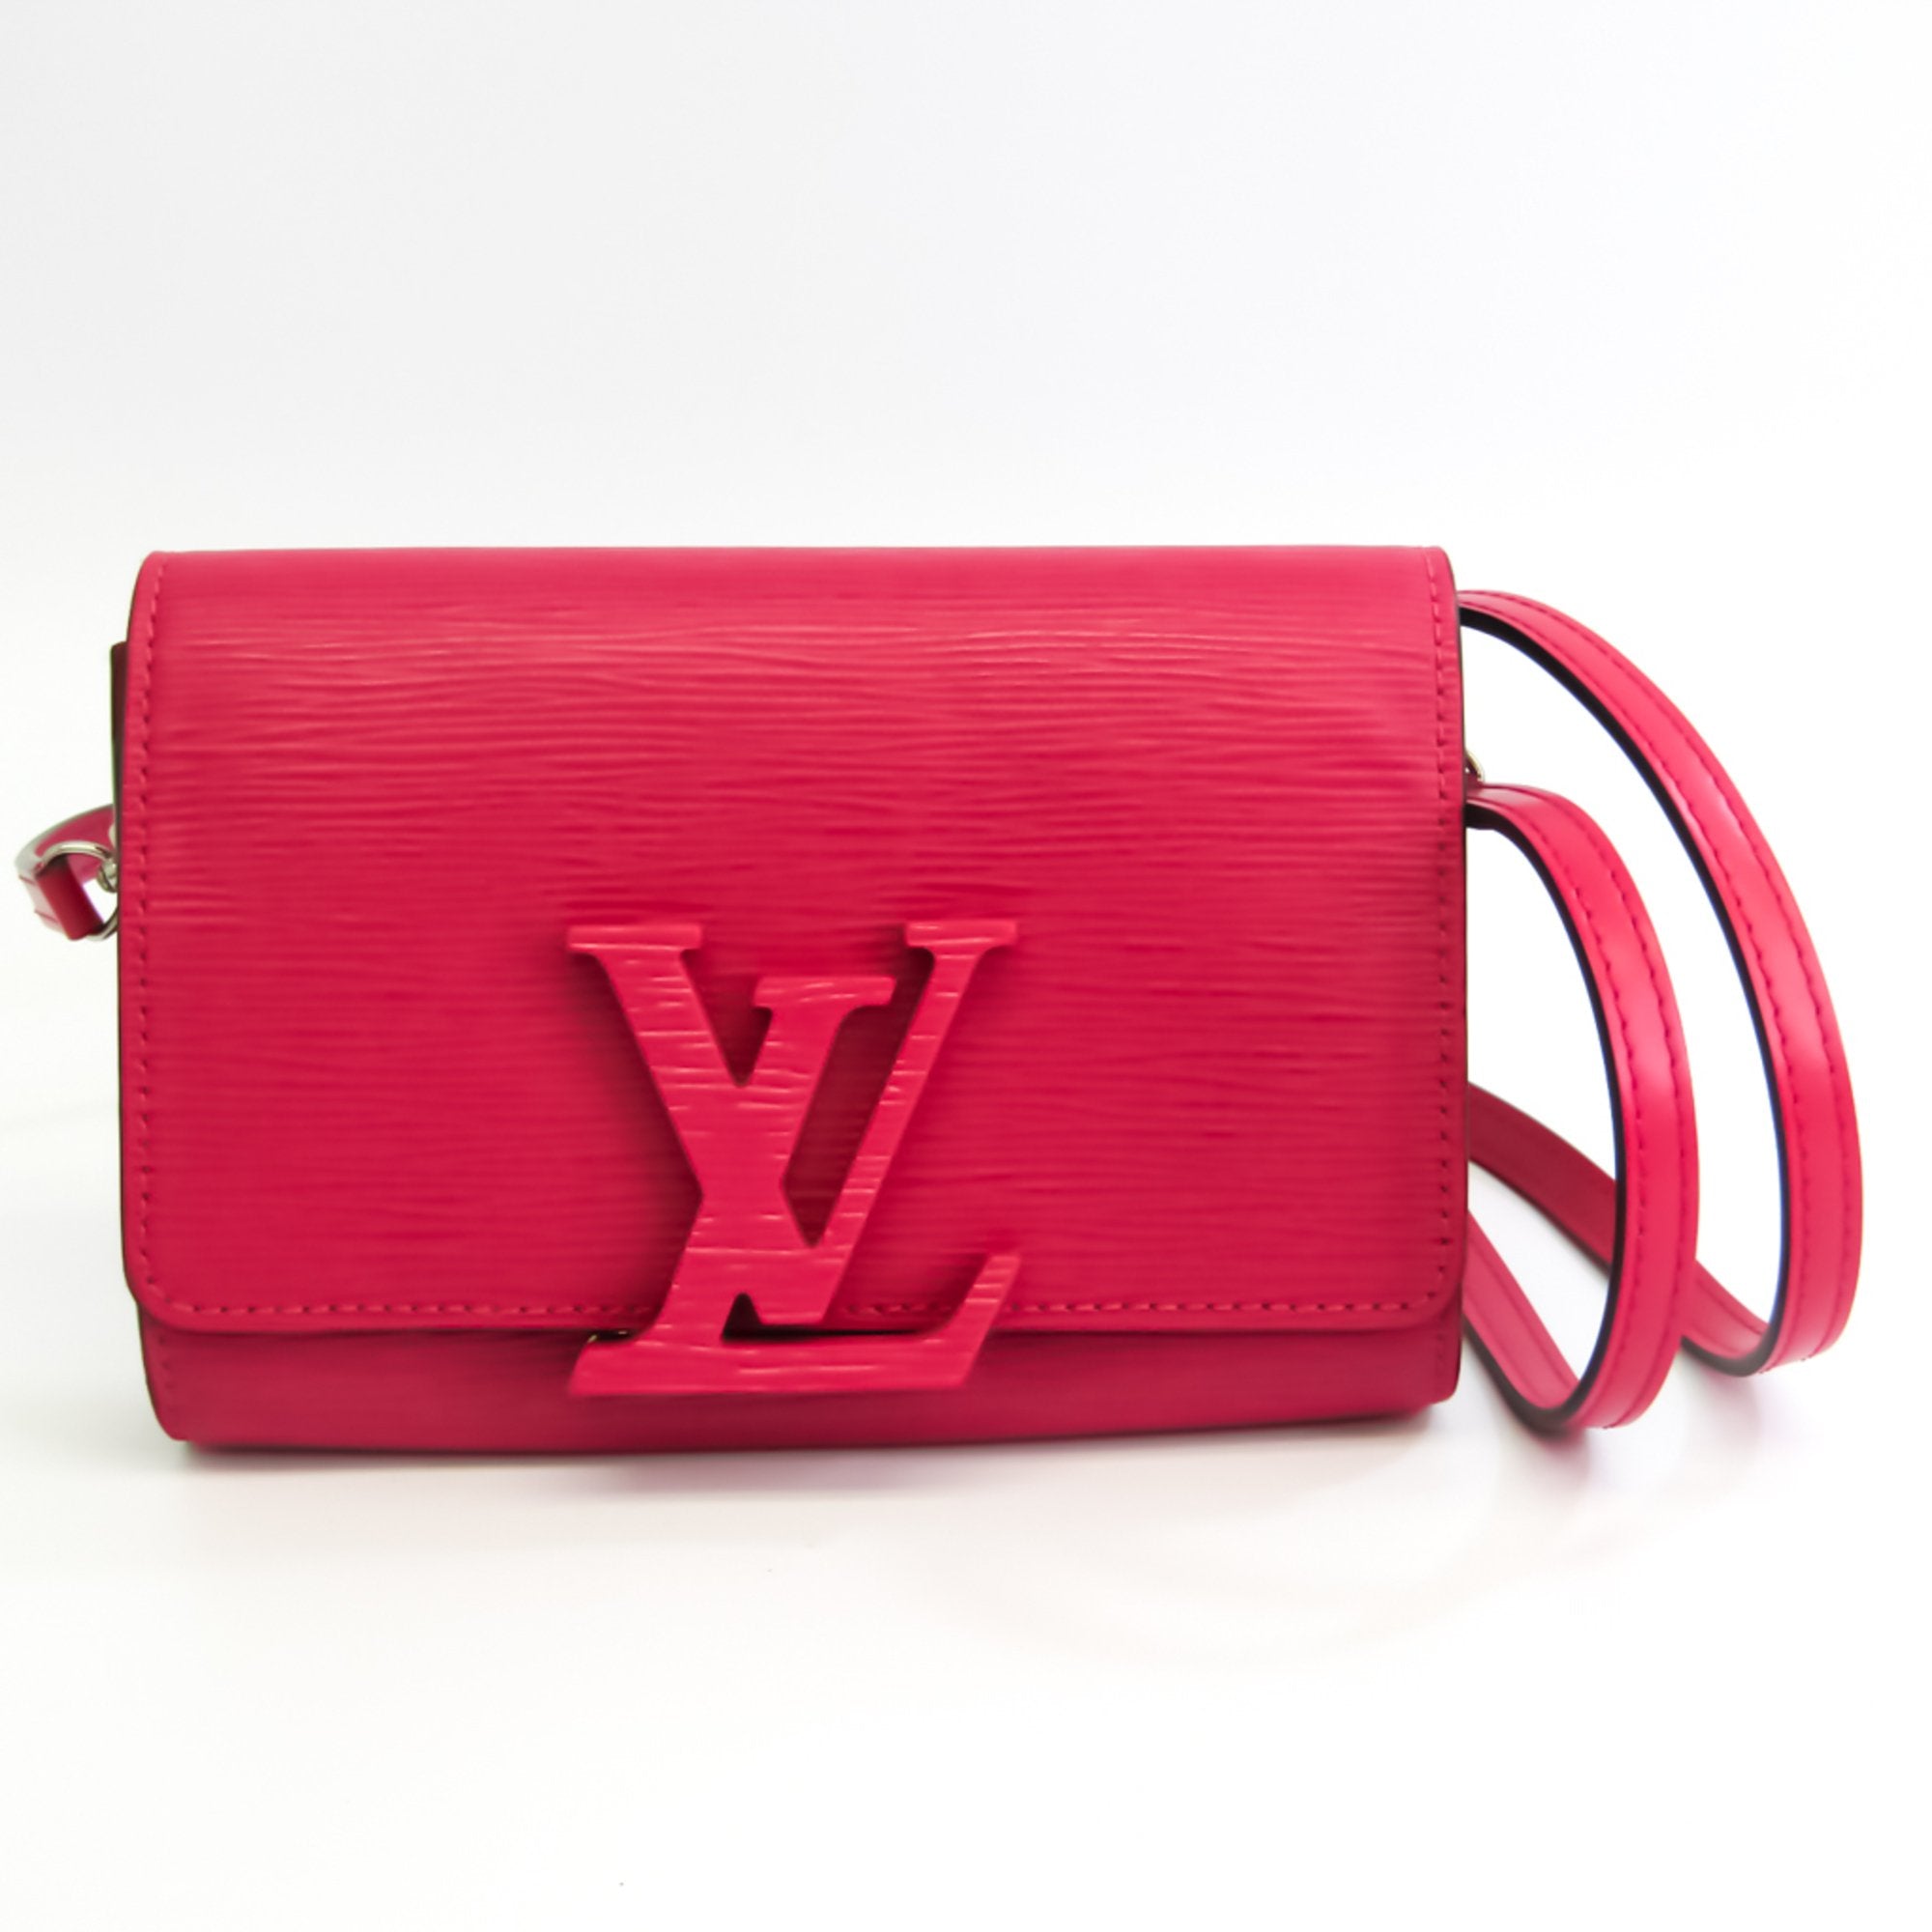 Louis Vuitton Black Epi Leather Shoulder Bag Excellent Condition  Lot  58283  Heritage Auctions